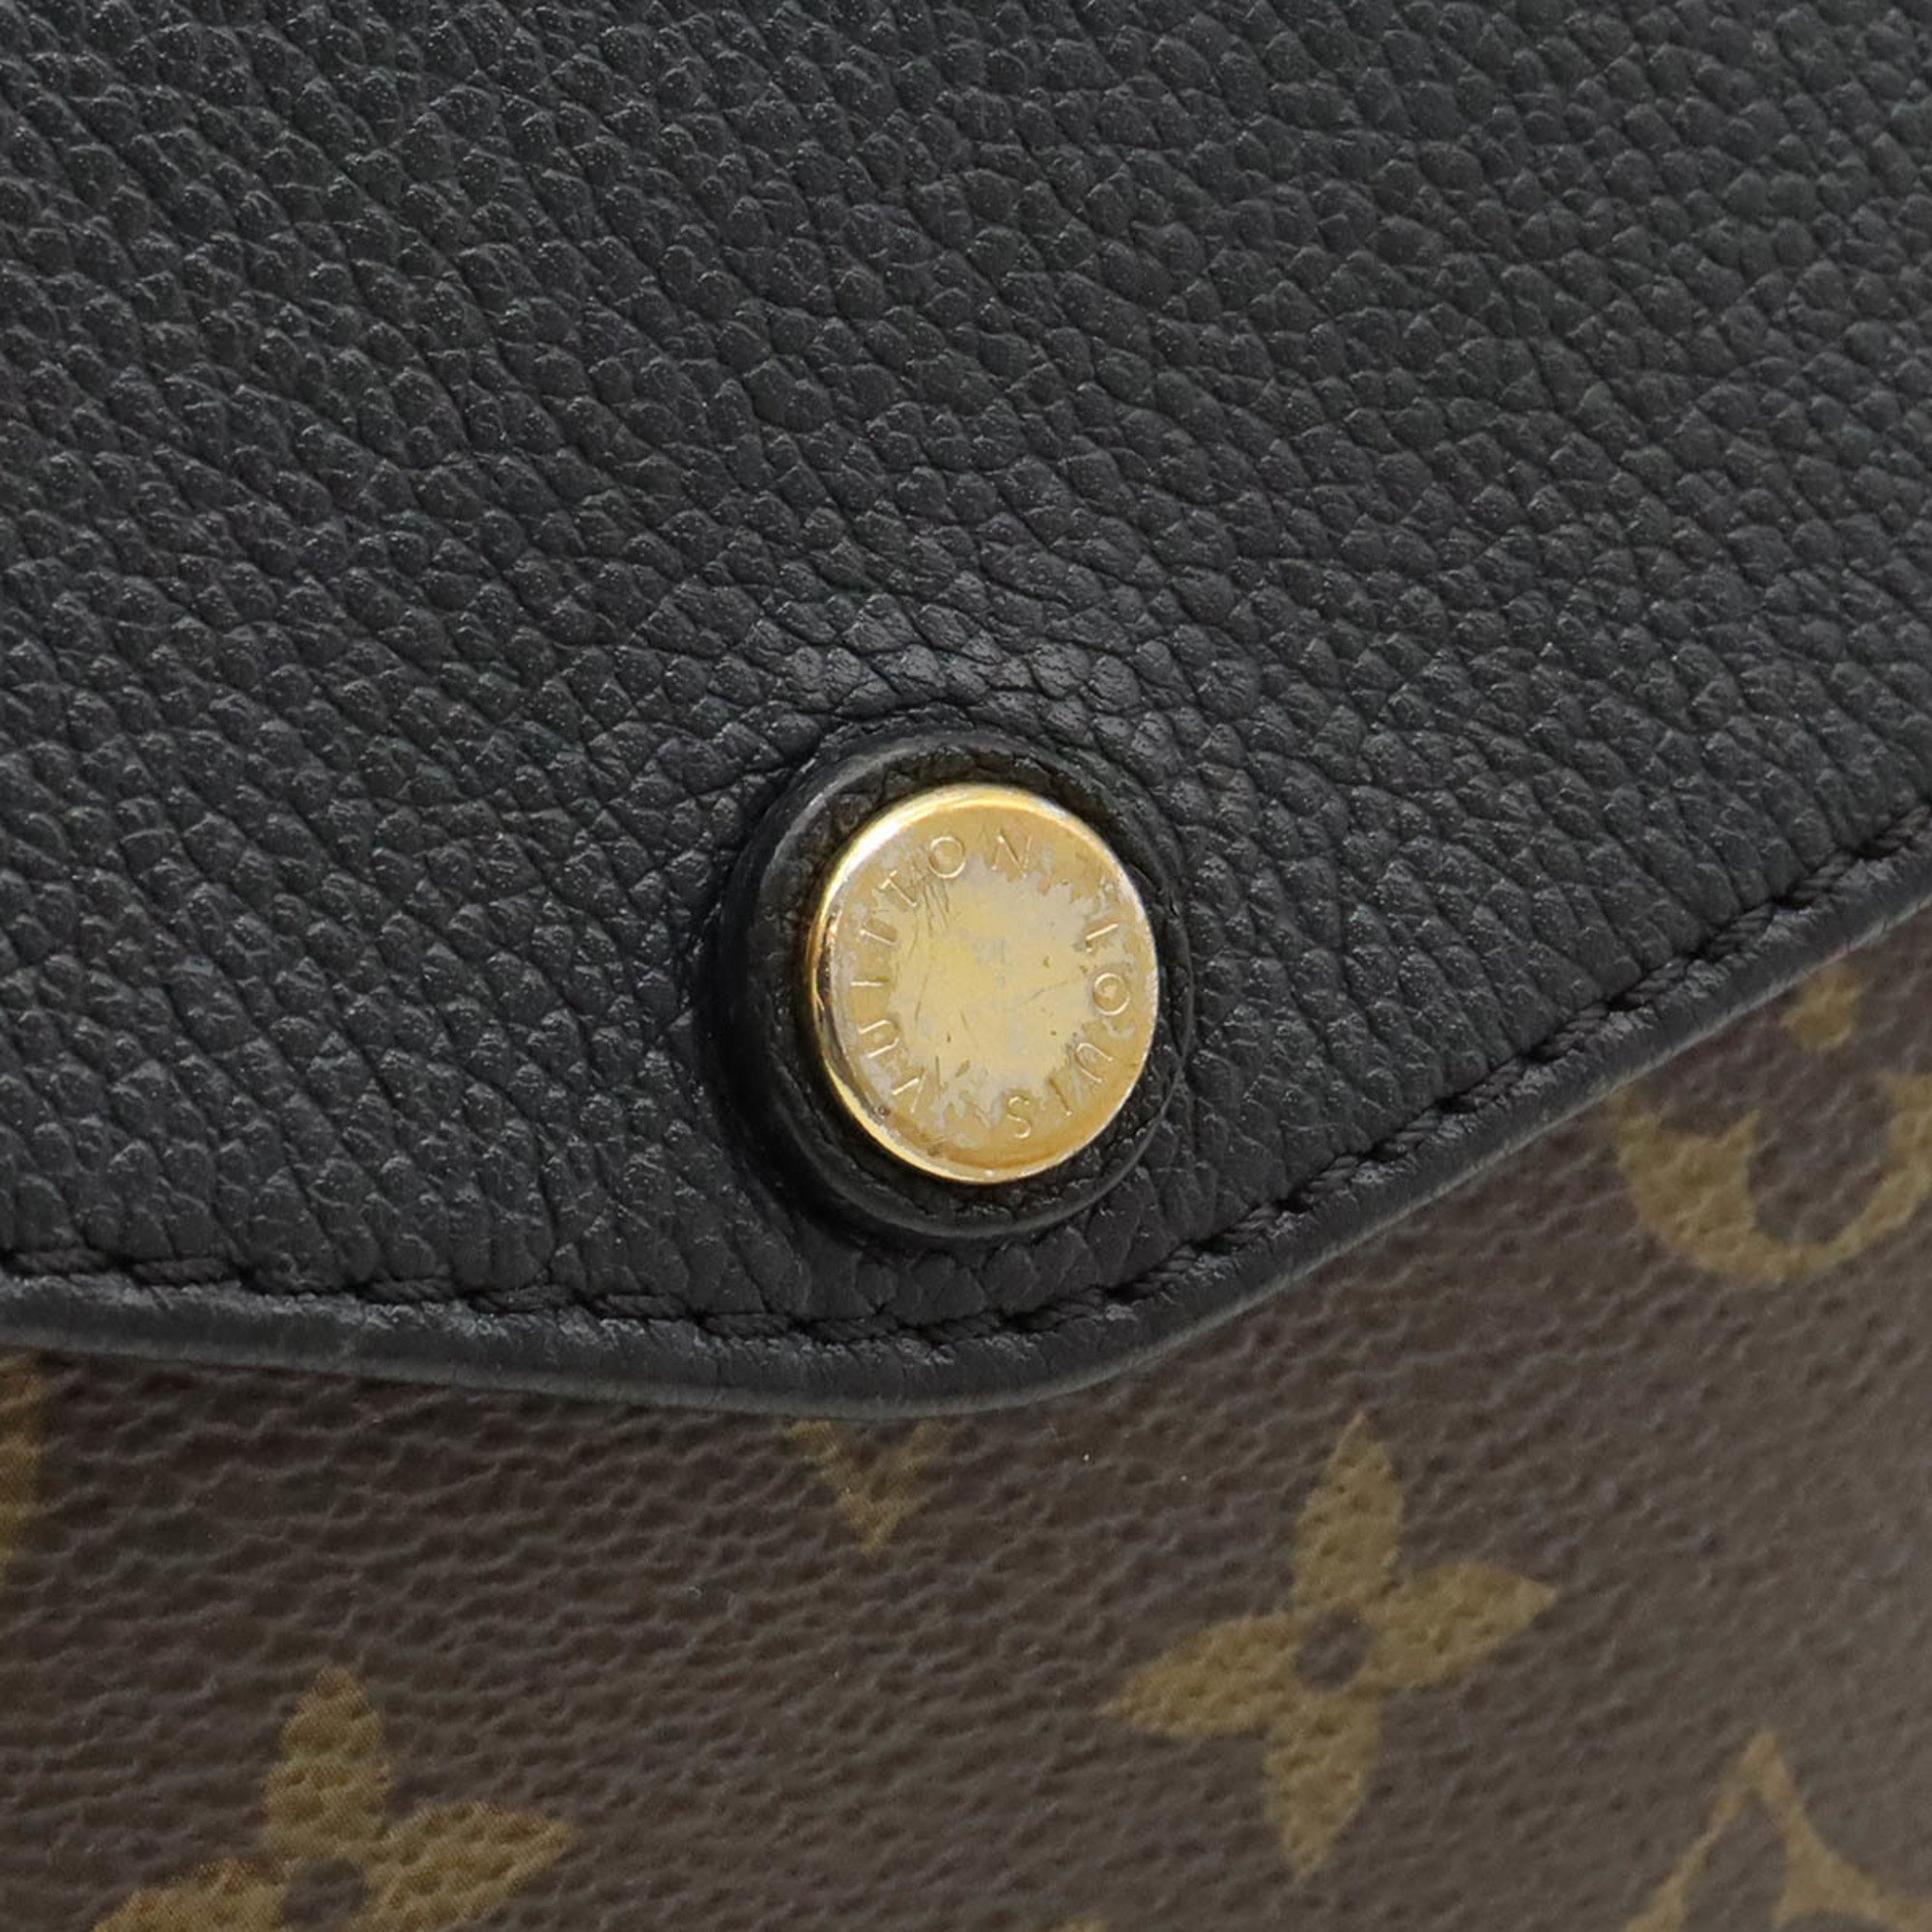 LOUIS VUITTON Louis Vuitton Monogram Twice Shoulder Bag Pochette Noir Black M50185